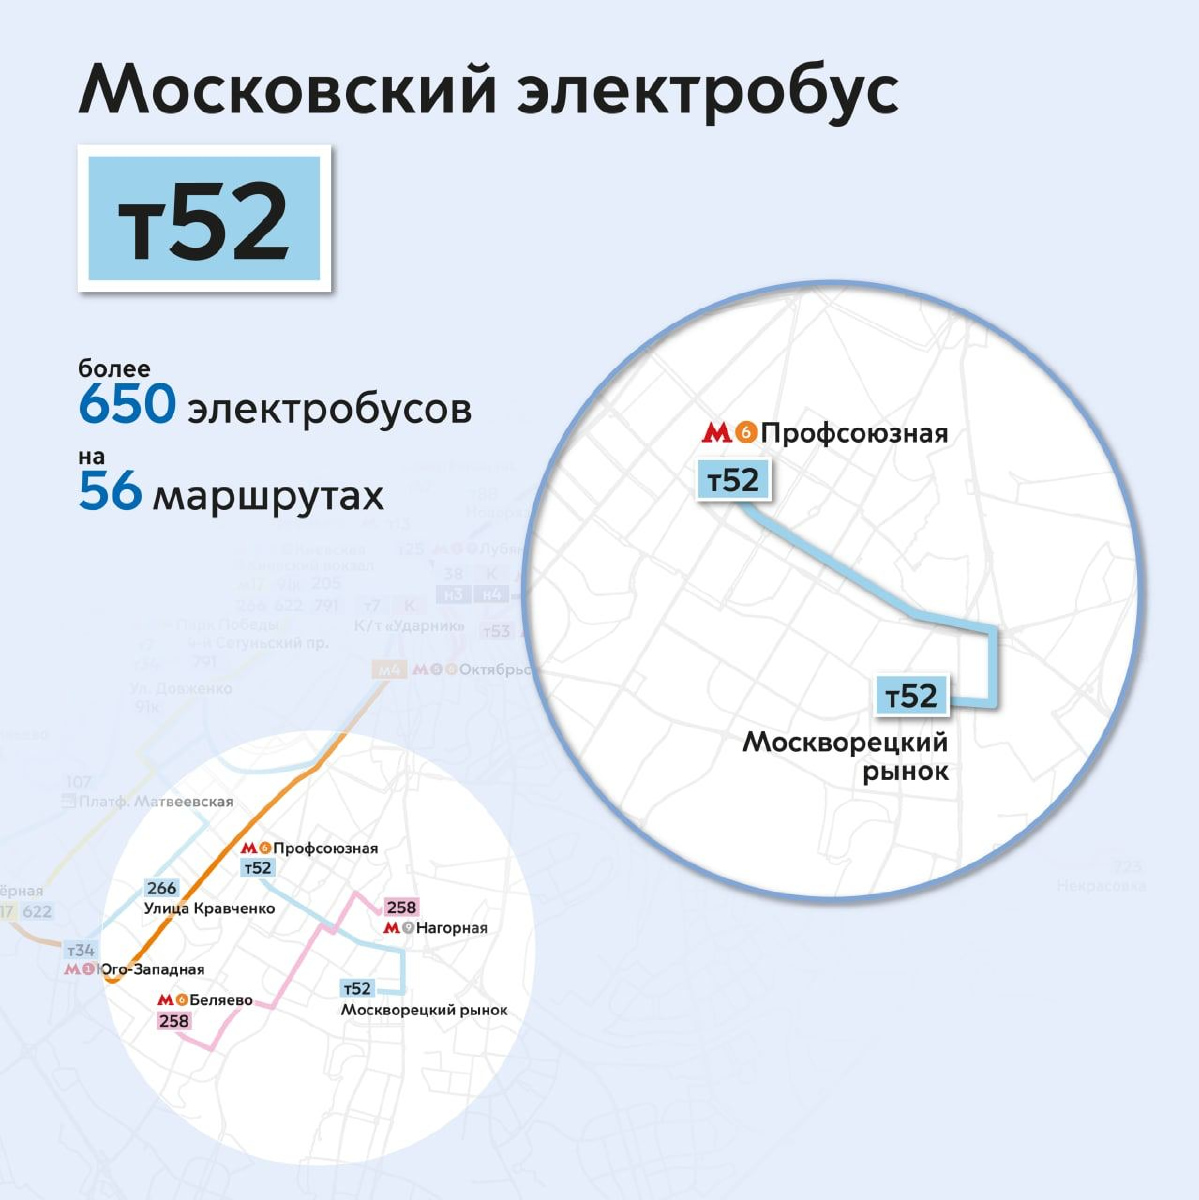 Москва — Схемы маршрутов электробуса; Москва — Схемы отдельных маршрутов